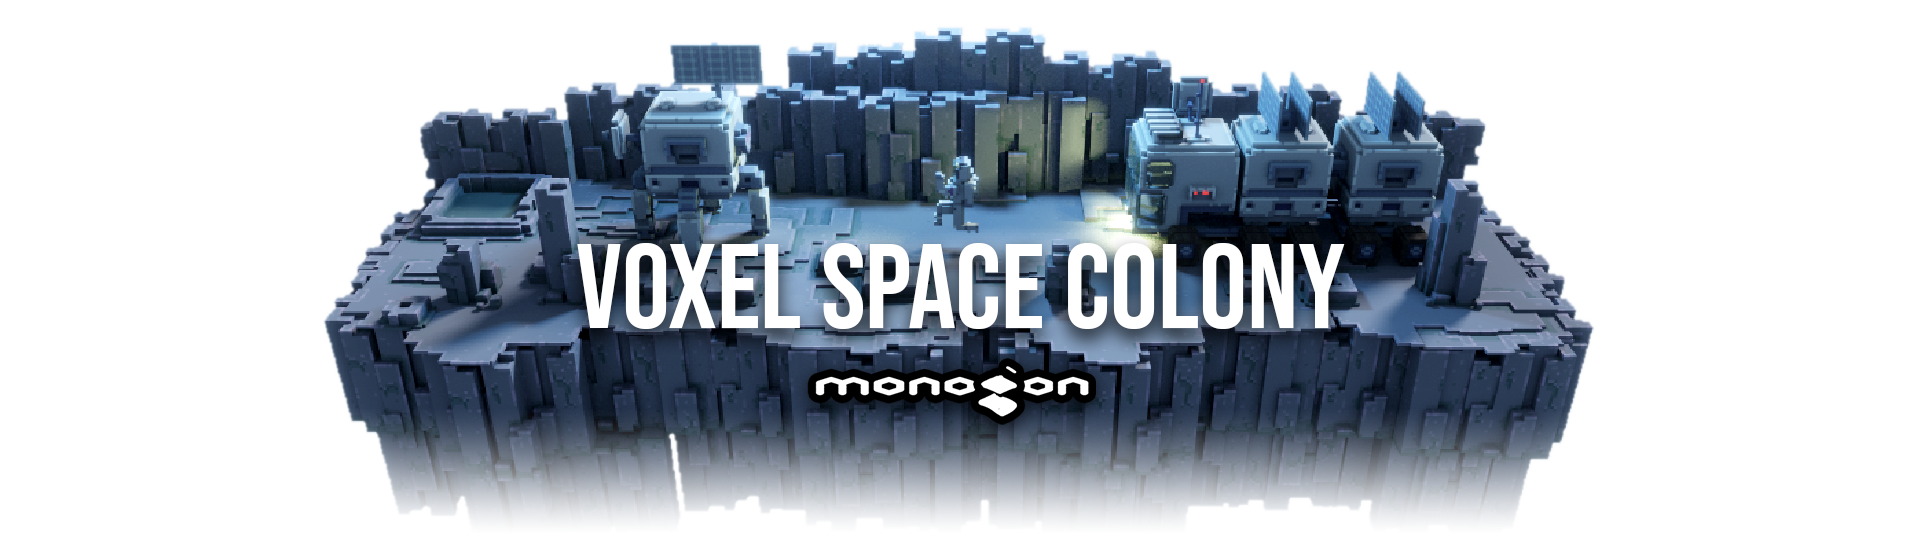 Voxel Space Colony - monogon